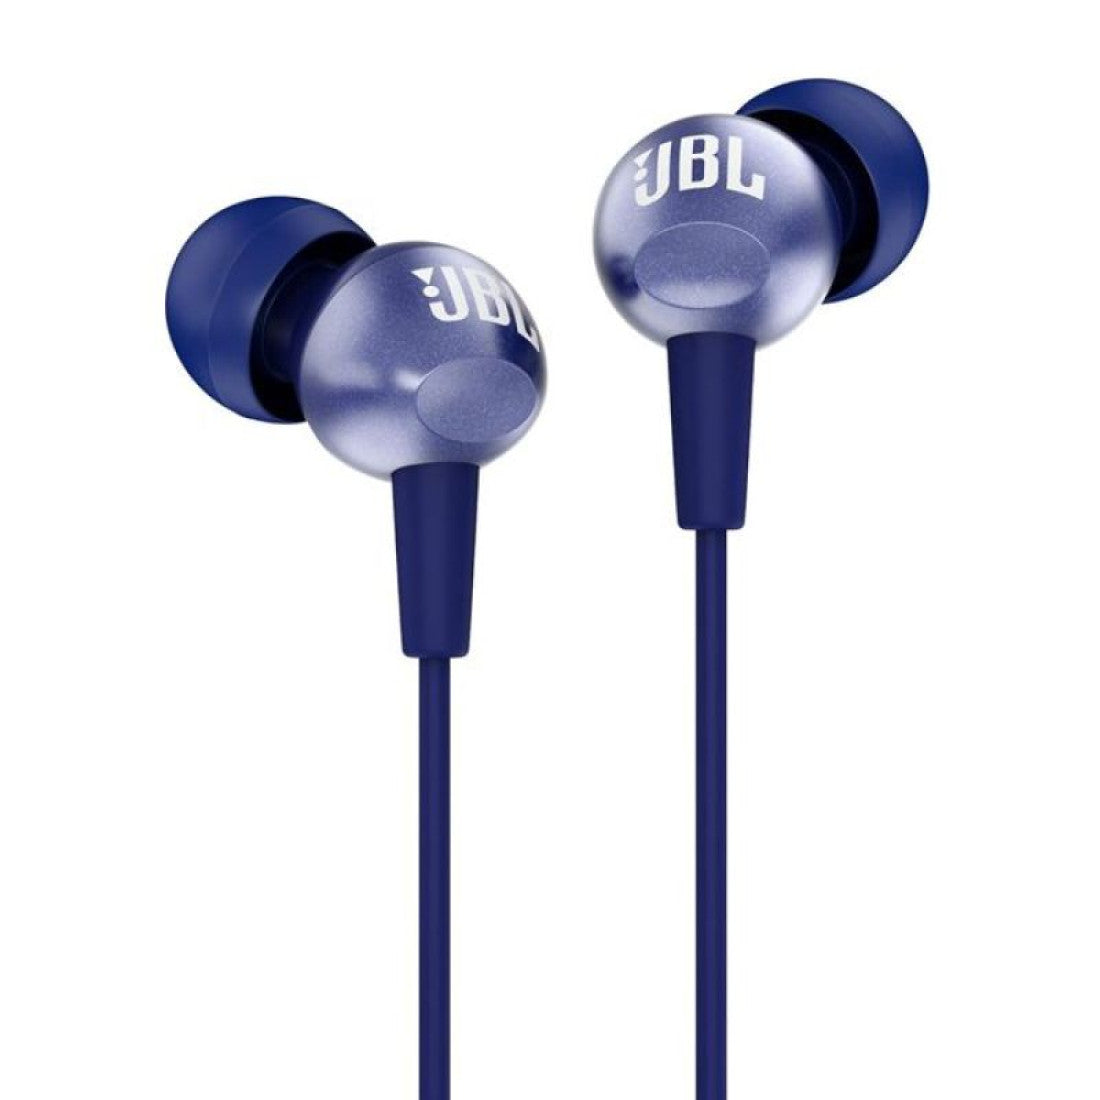 JBL EARPHONE C200 BLUE